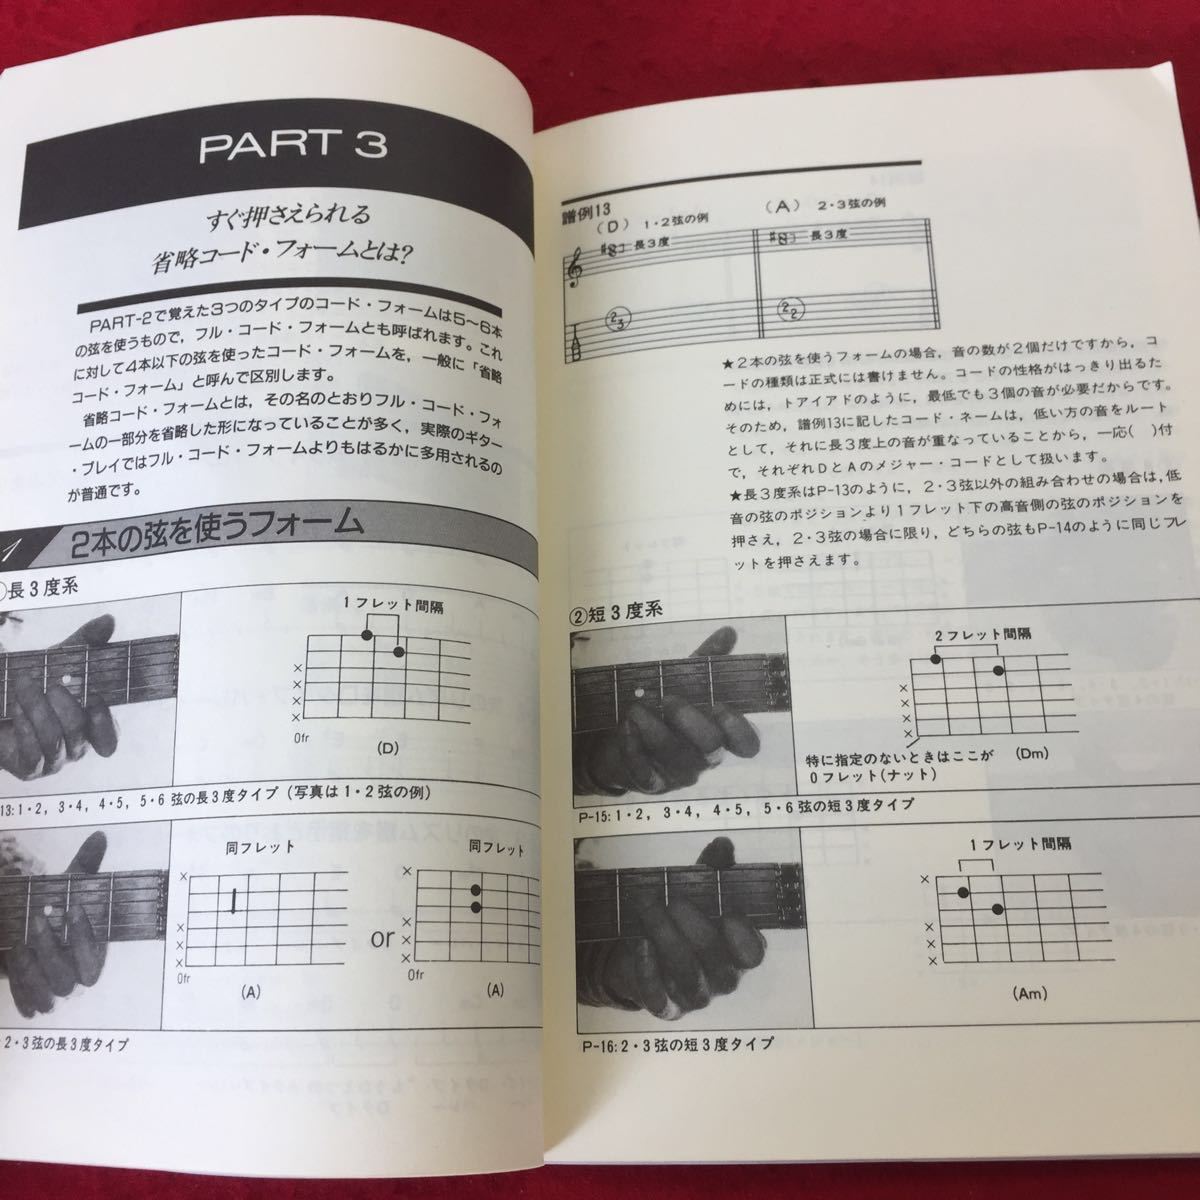 YW-183 よくわかるロックギター・コード入門 青山忠英 シンコー ミュージック すぐに役立つコード・ド・プレイのノウハウを満載 1993年発行_画像4